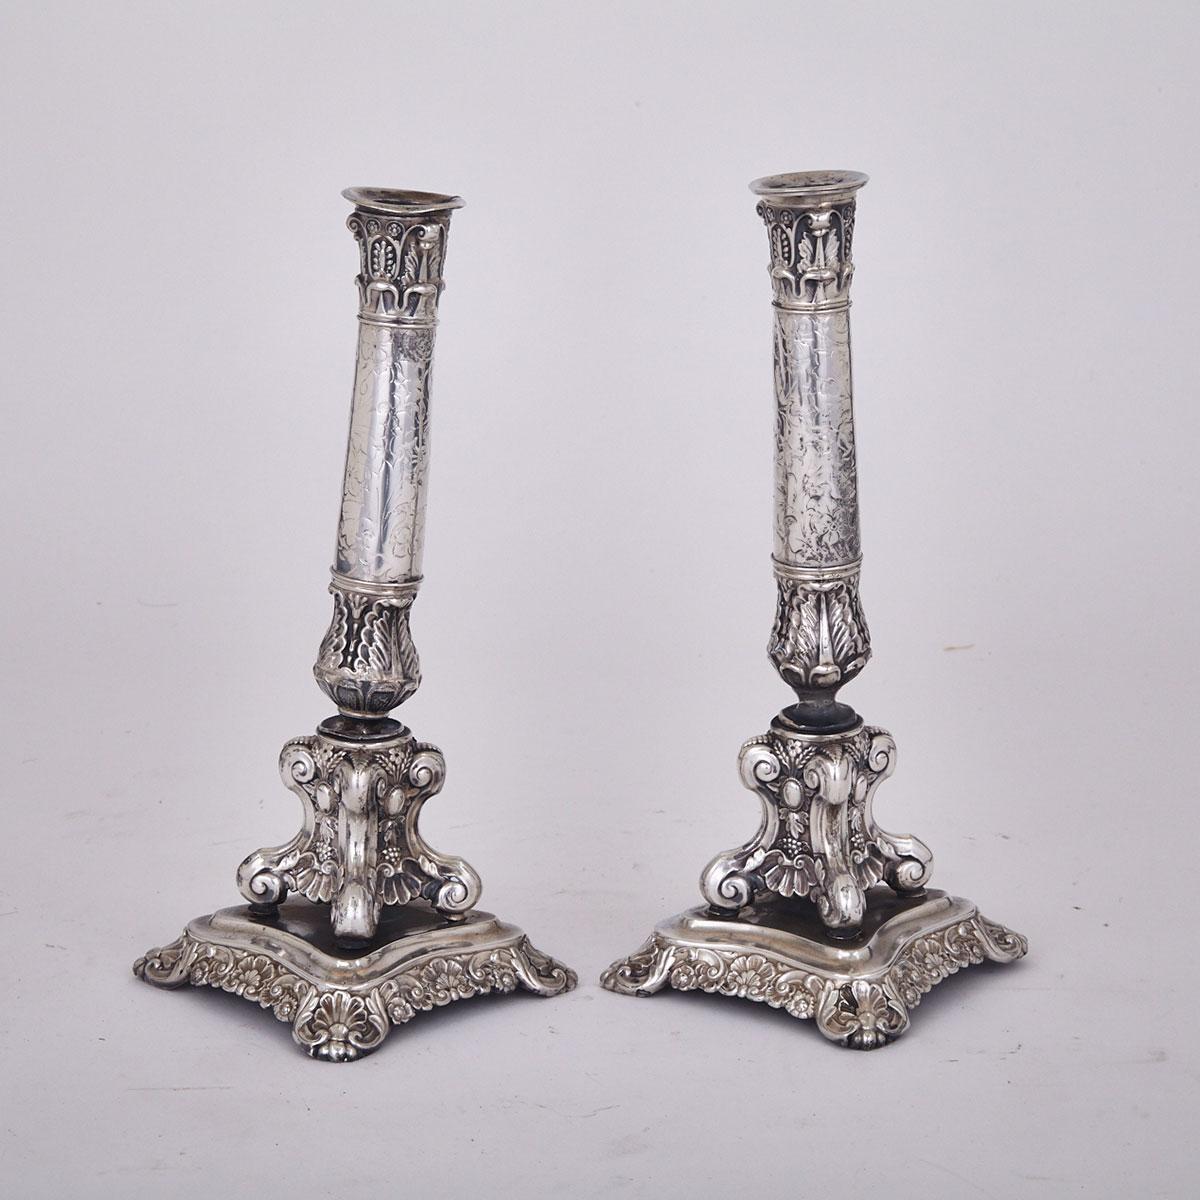 Pair of German Silver Candlesticks, Breslau, 1839-49